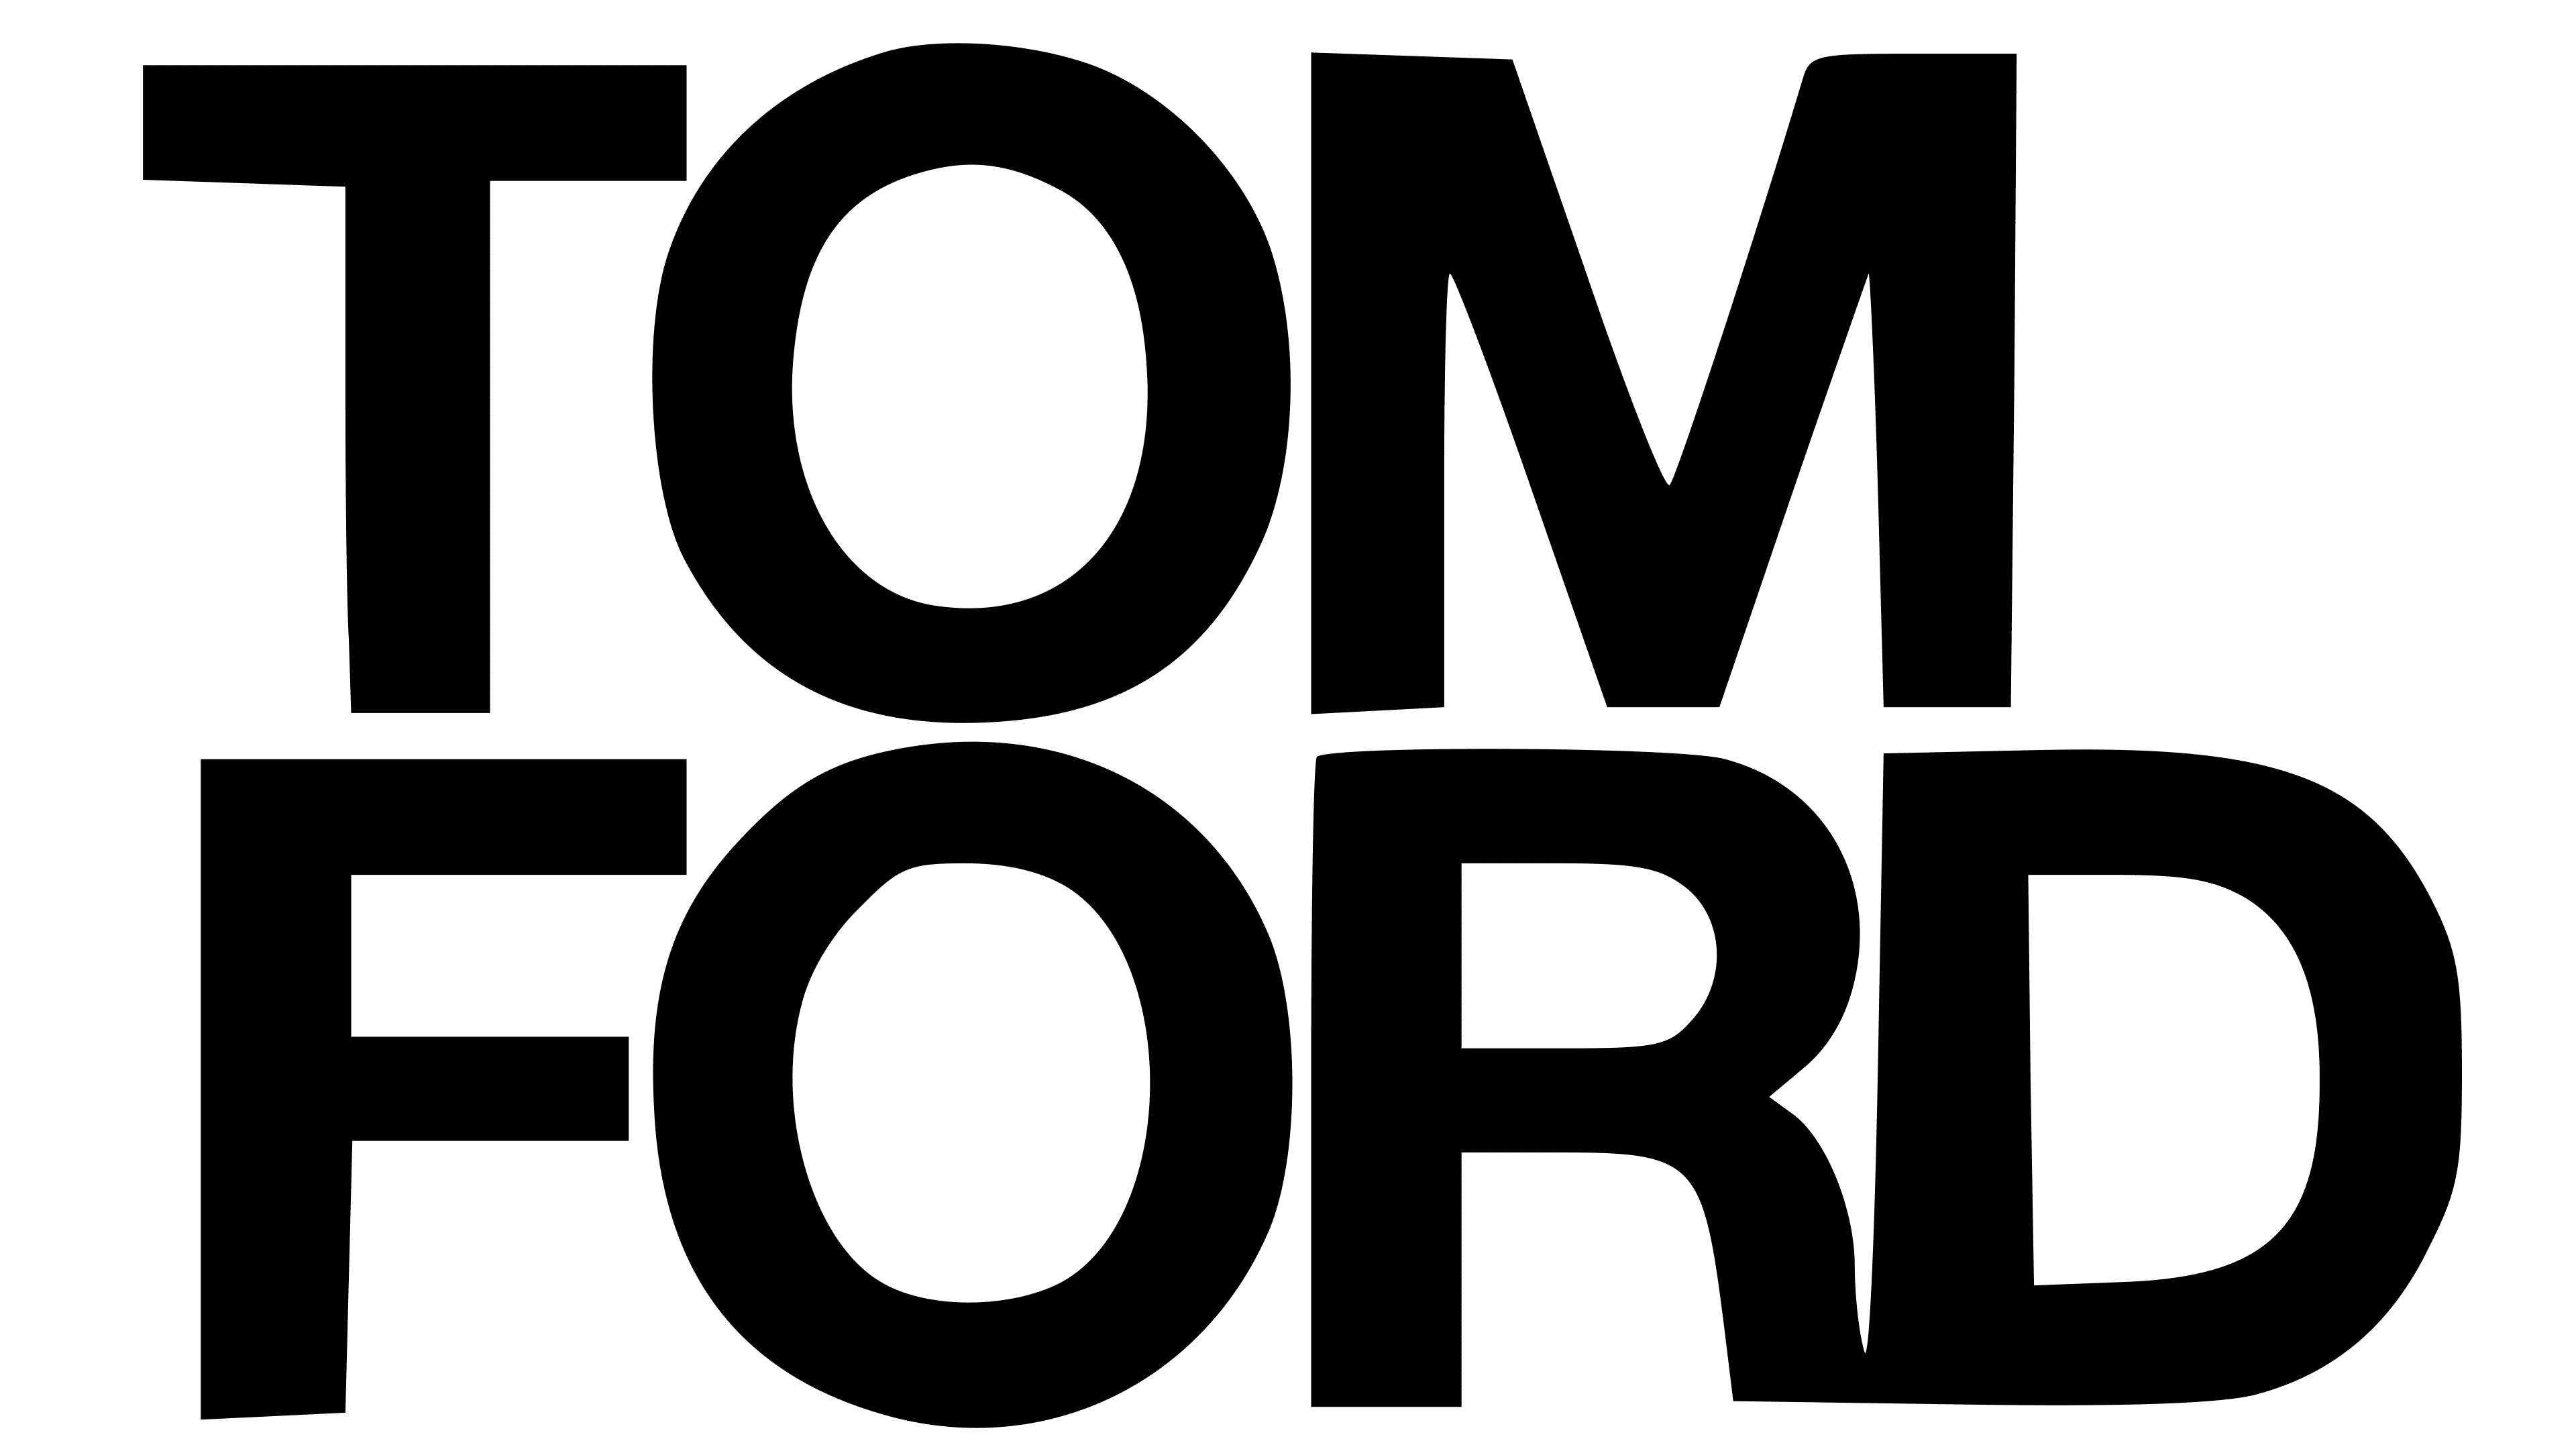 Tom Ford Marca | vlr.eng.br